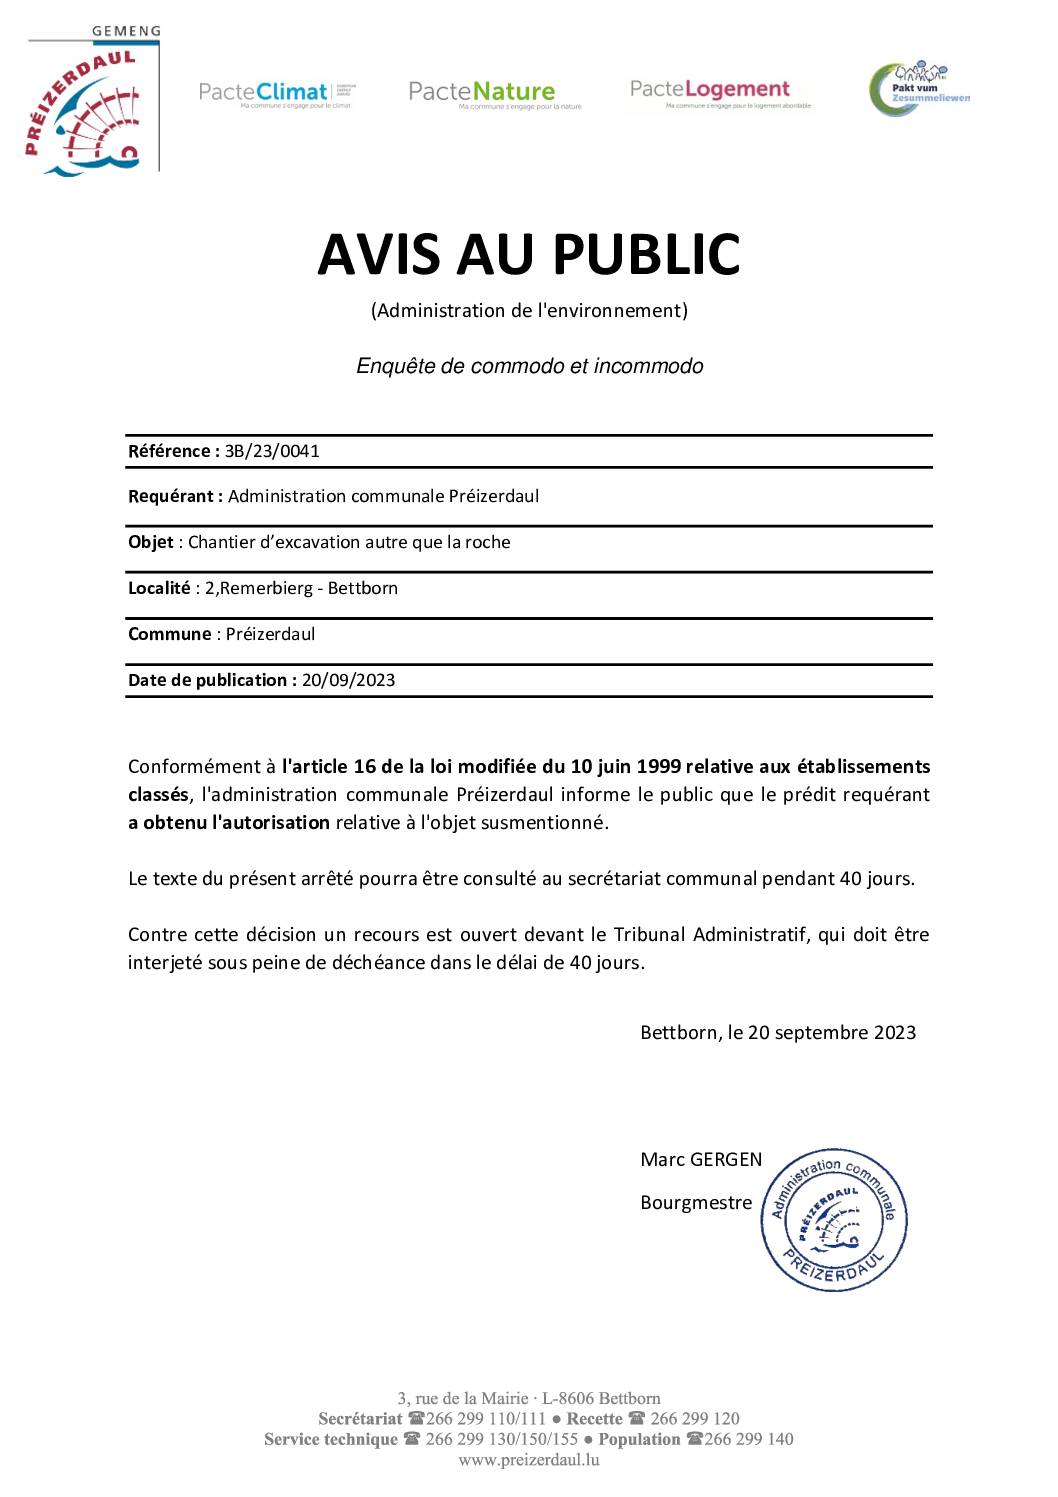 AVIS- MEV- Réf. 3B/23/0041